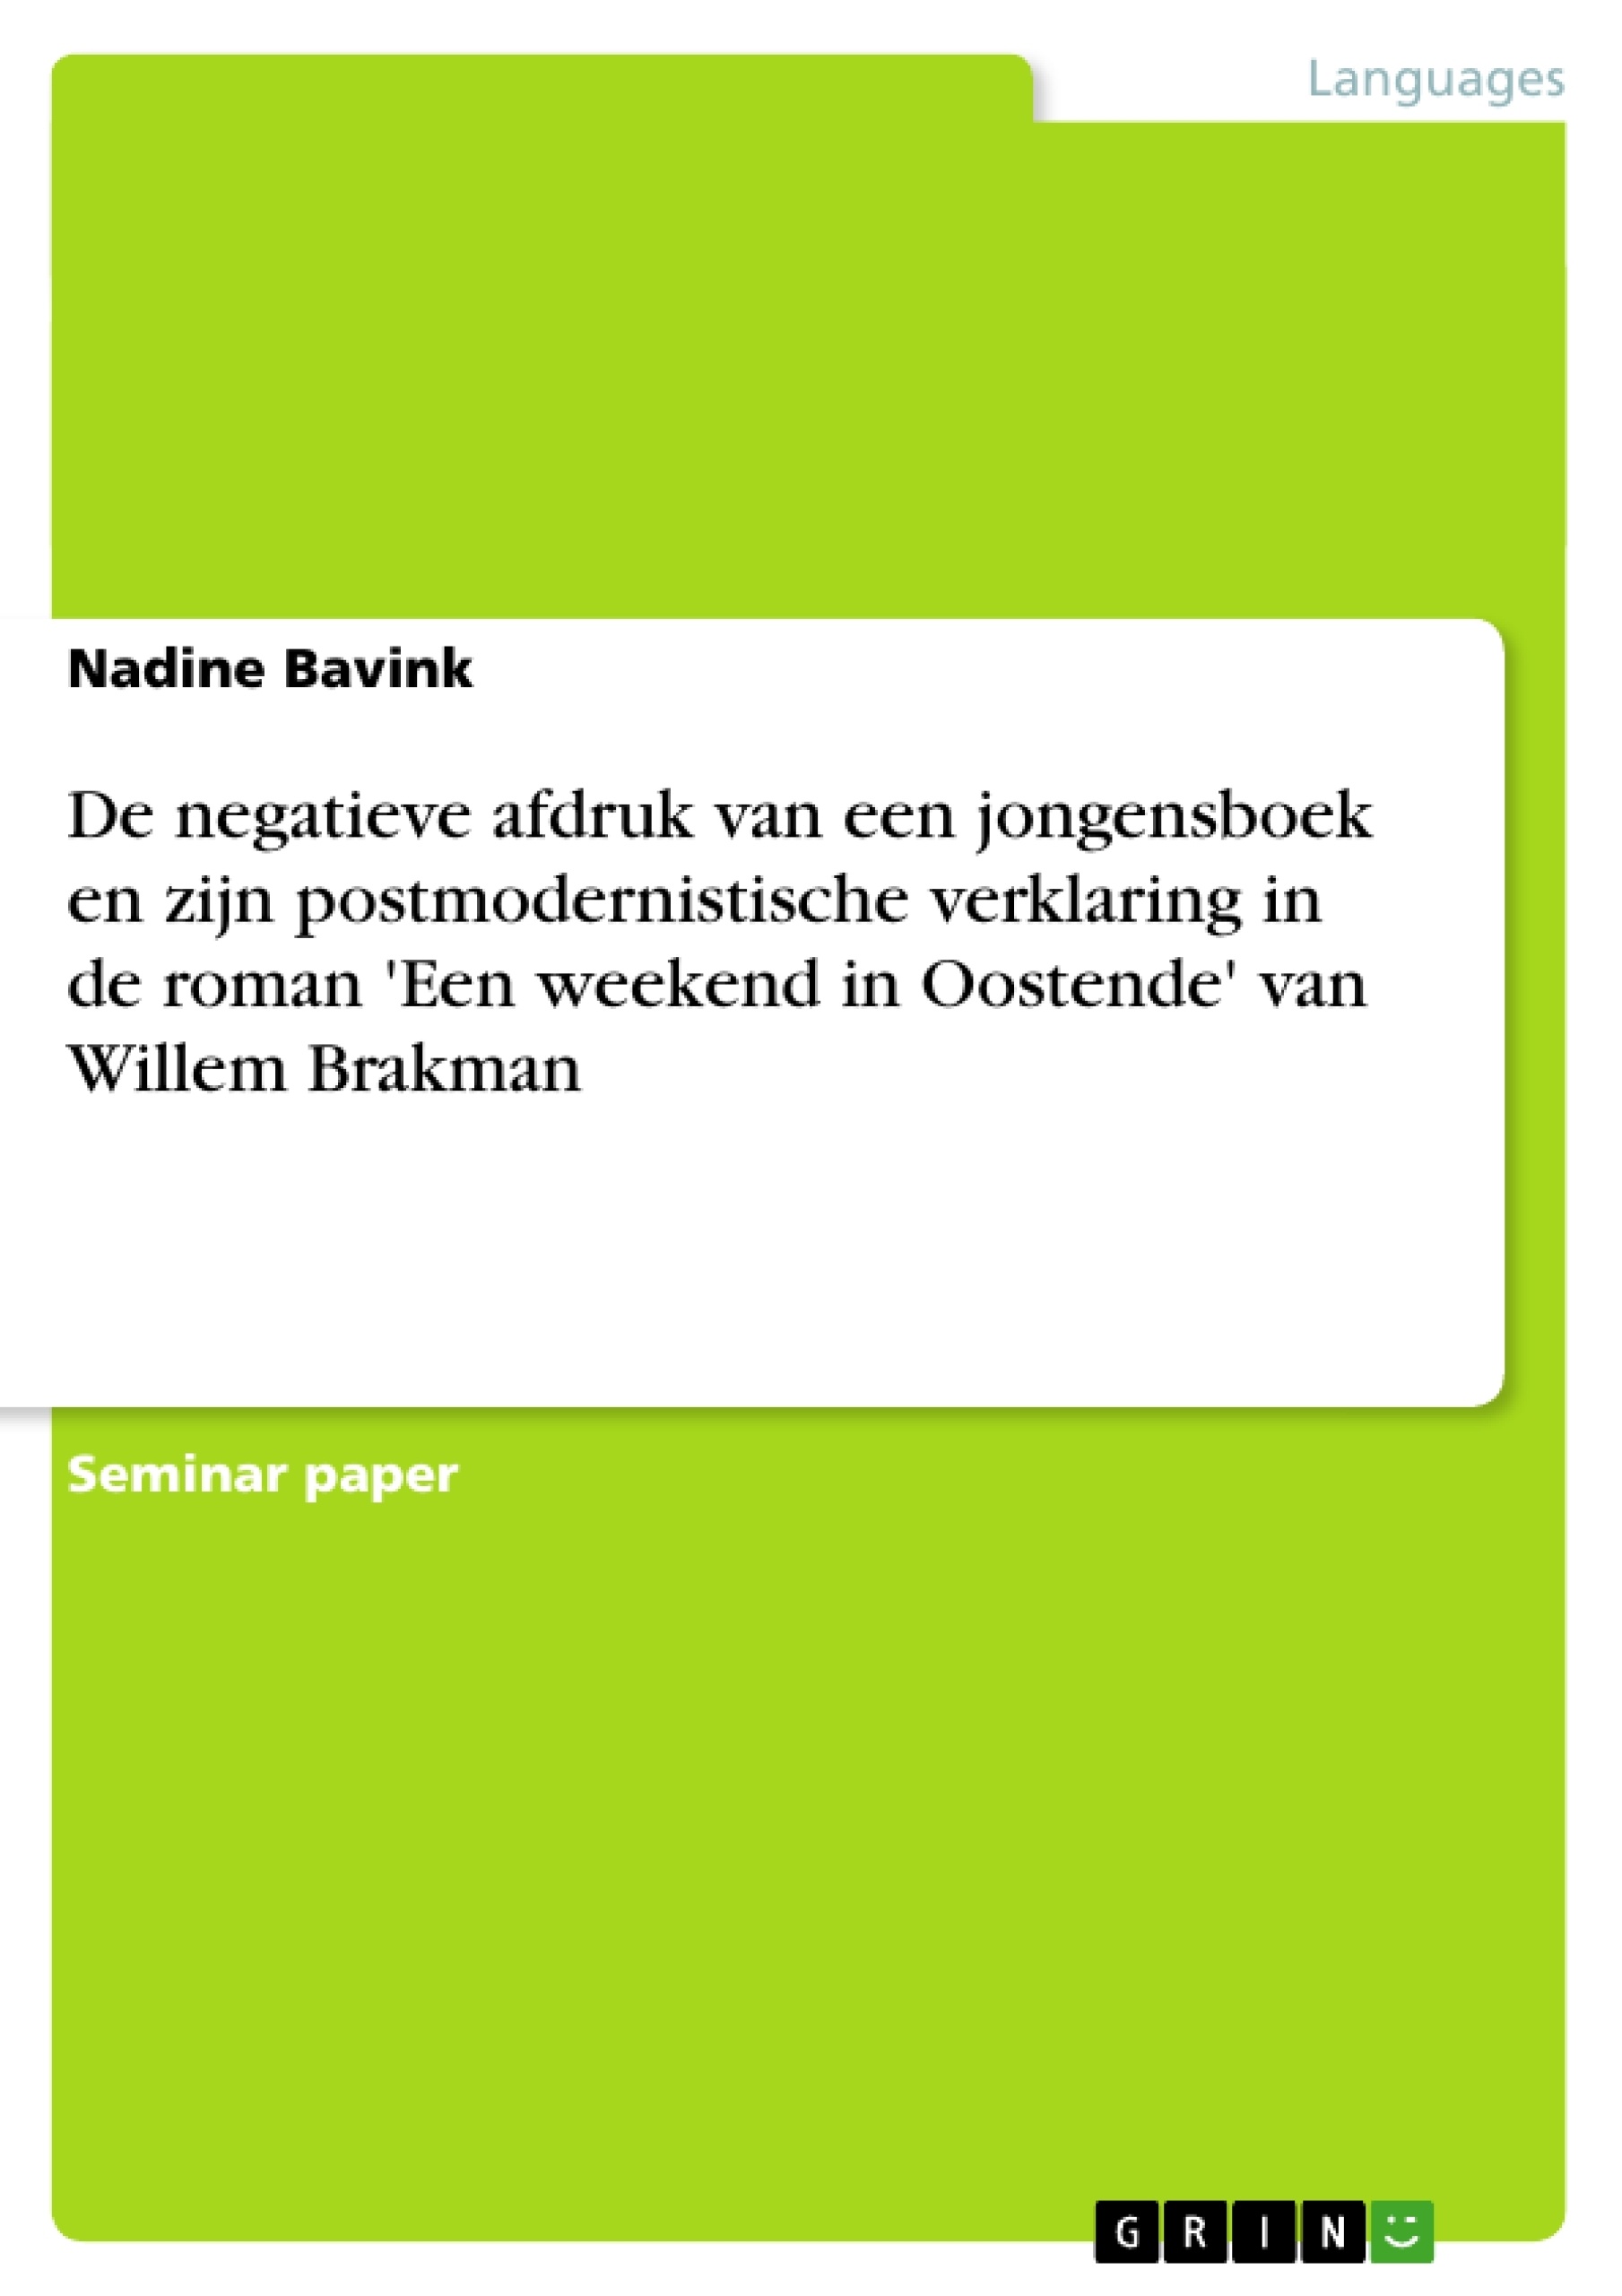 Titre: De negatieve afdruk van een jongensboek en zijn postmodernistische verklaring in de roman 'Een weekend in Oostende' van Willem Brakman